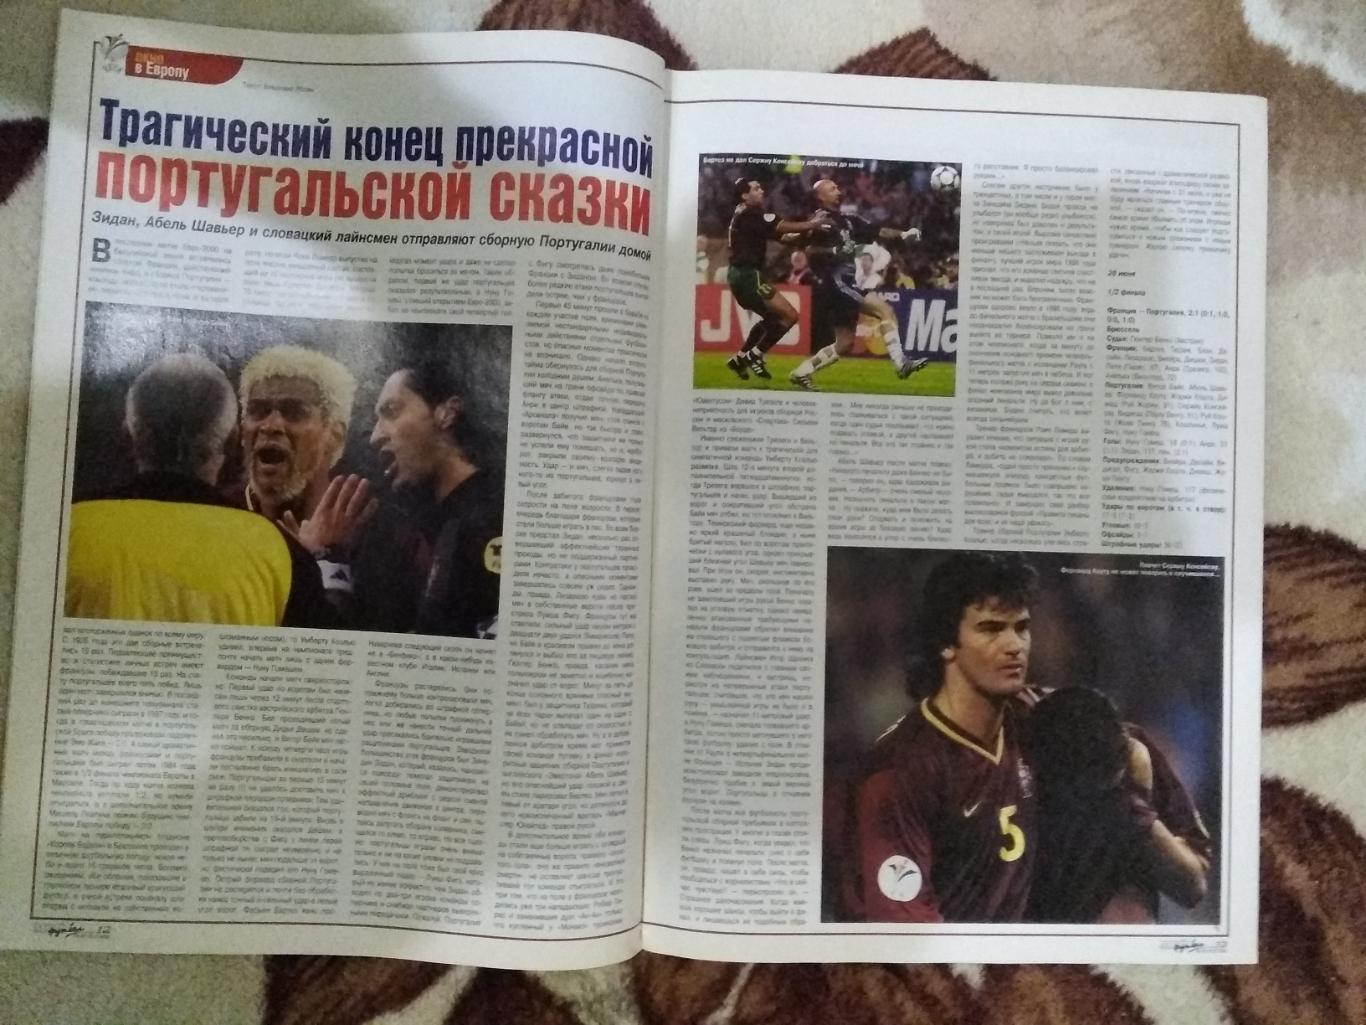 Журнал.Мой футбол №25 2000 г. (Чемпионат Европы) (постер). 1